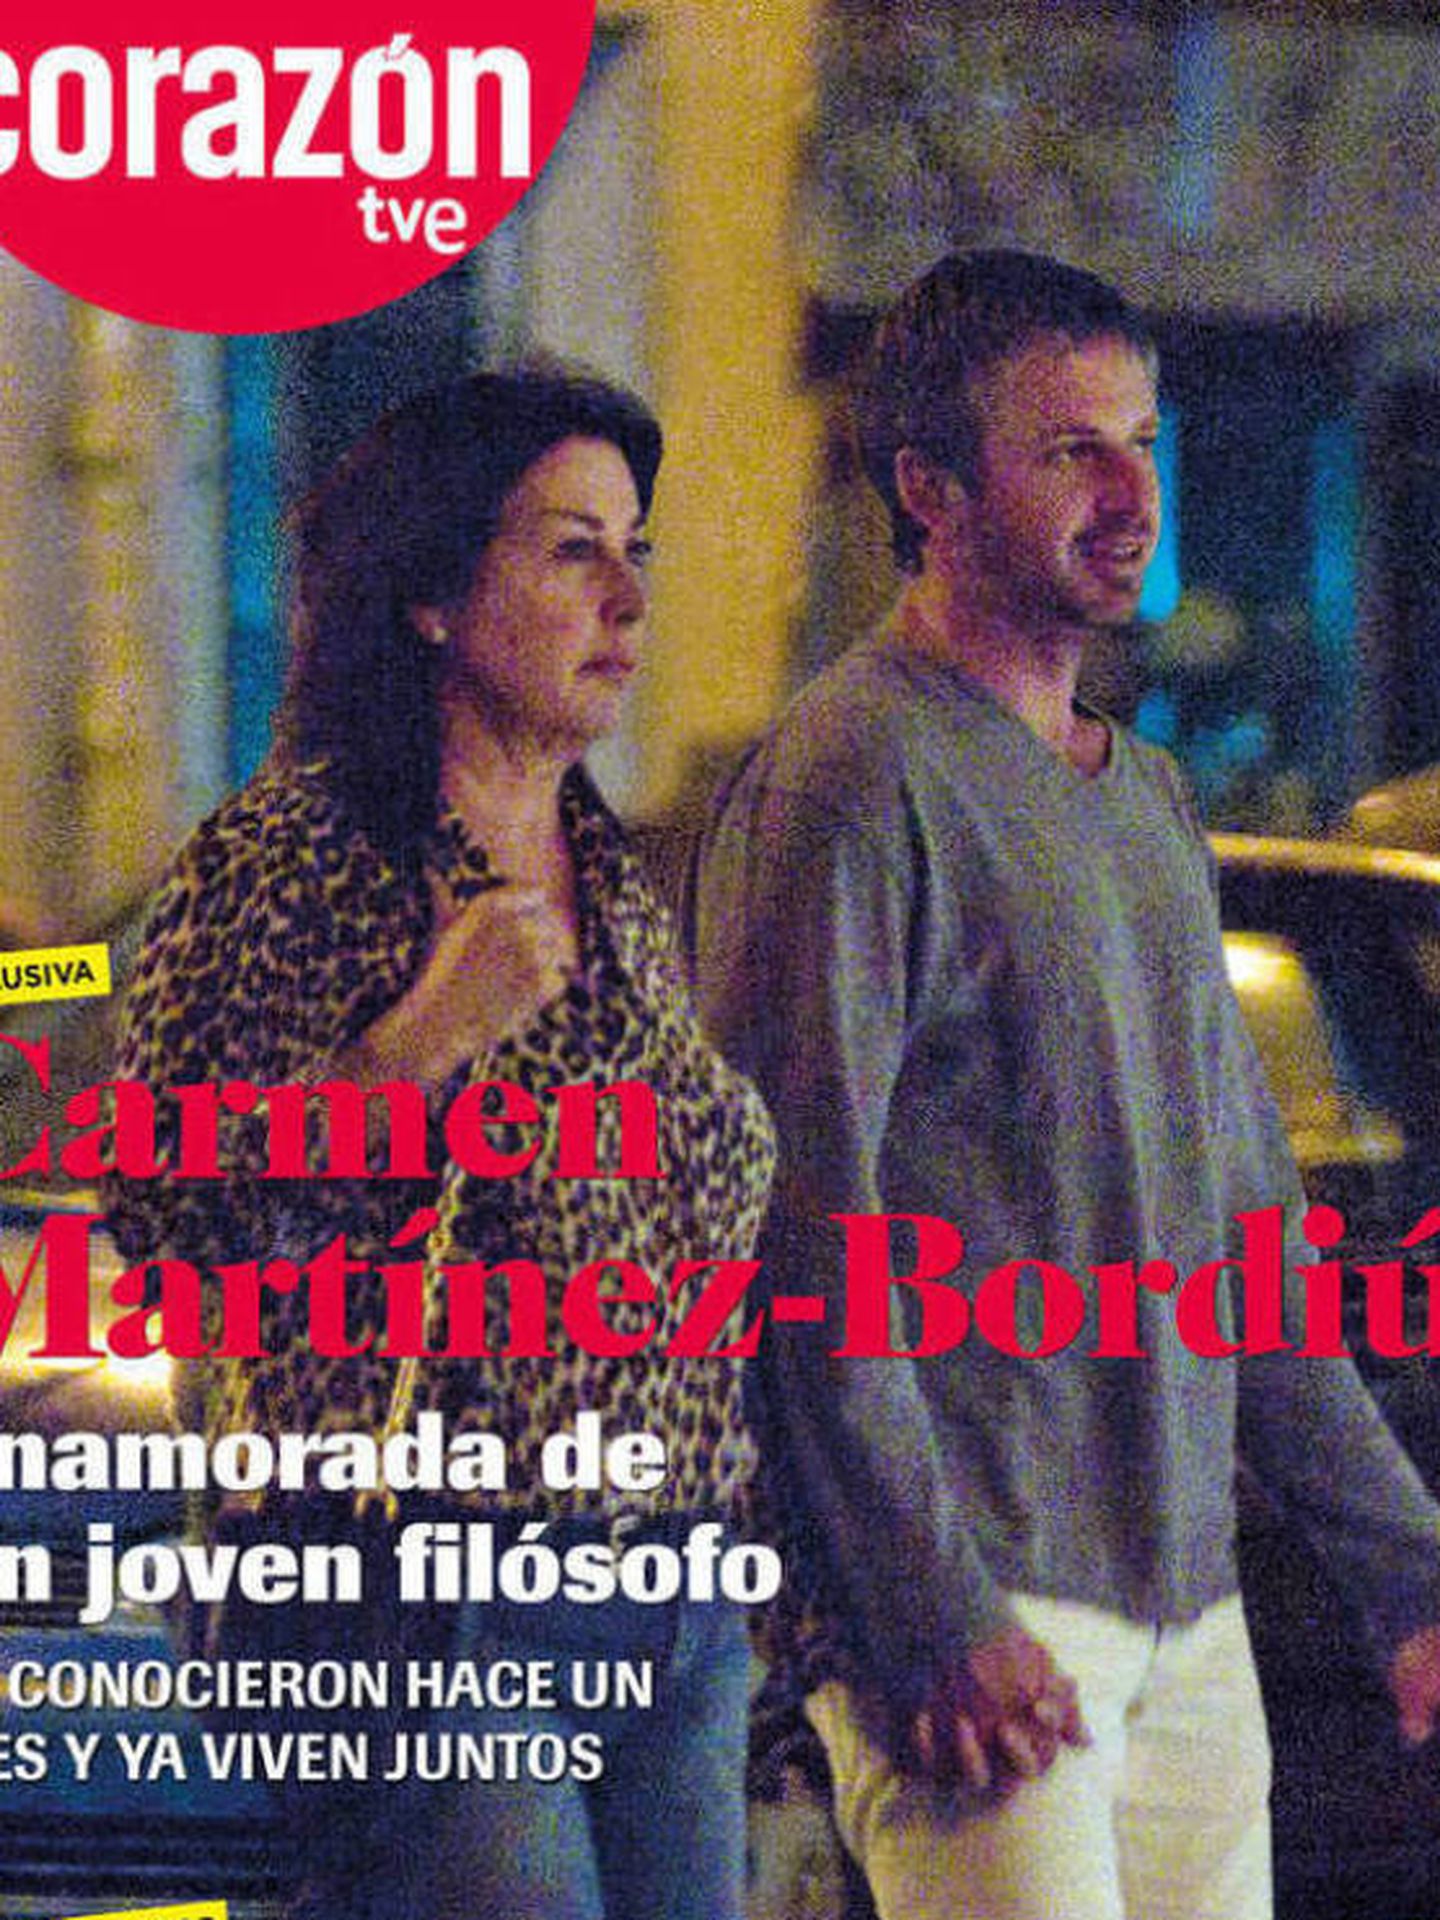 Carmen y su novio, en la portada de 'Corazón TVE'